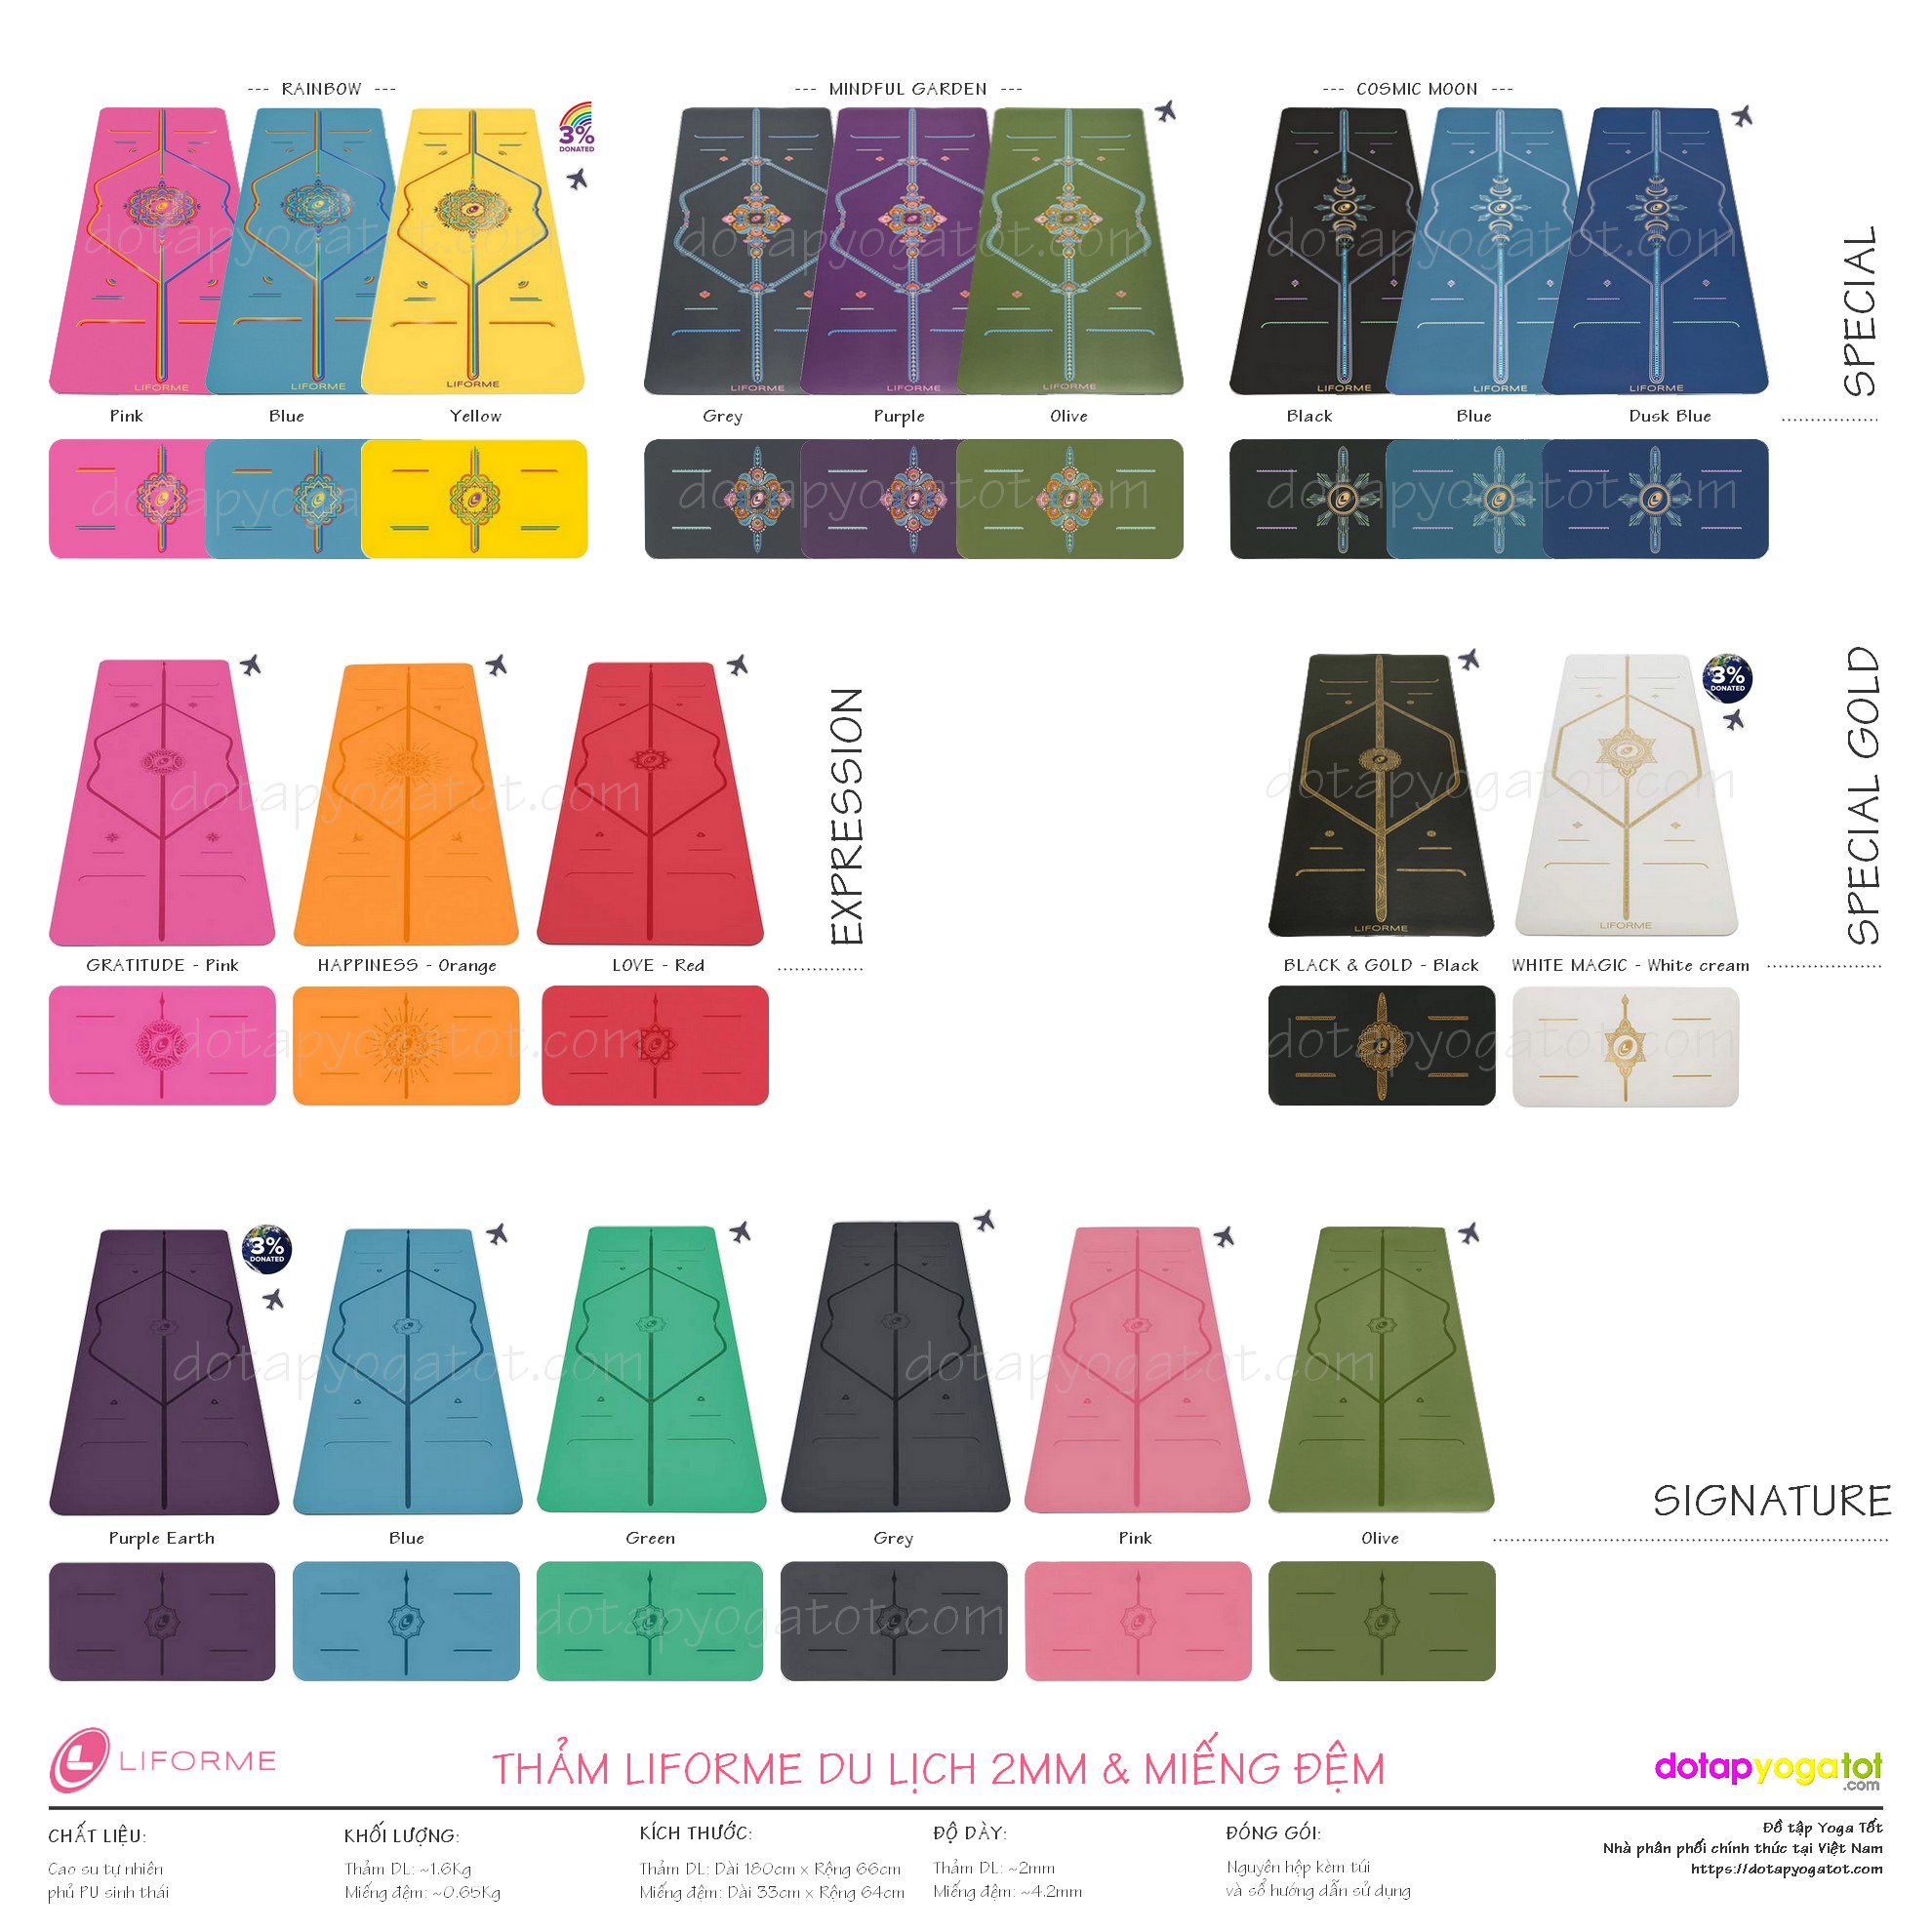 Bảng màu tất cả các mẫu thảm yoga du lịch Liforme 2mm